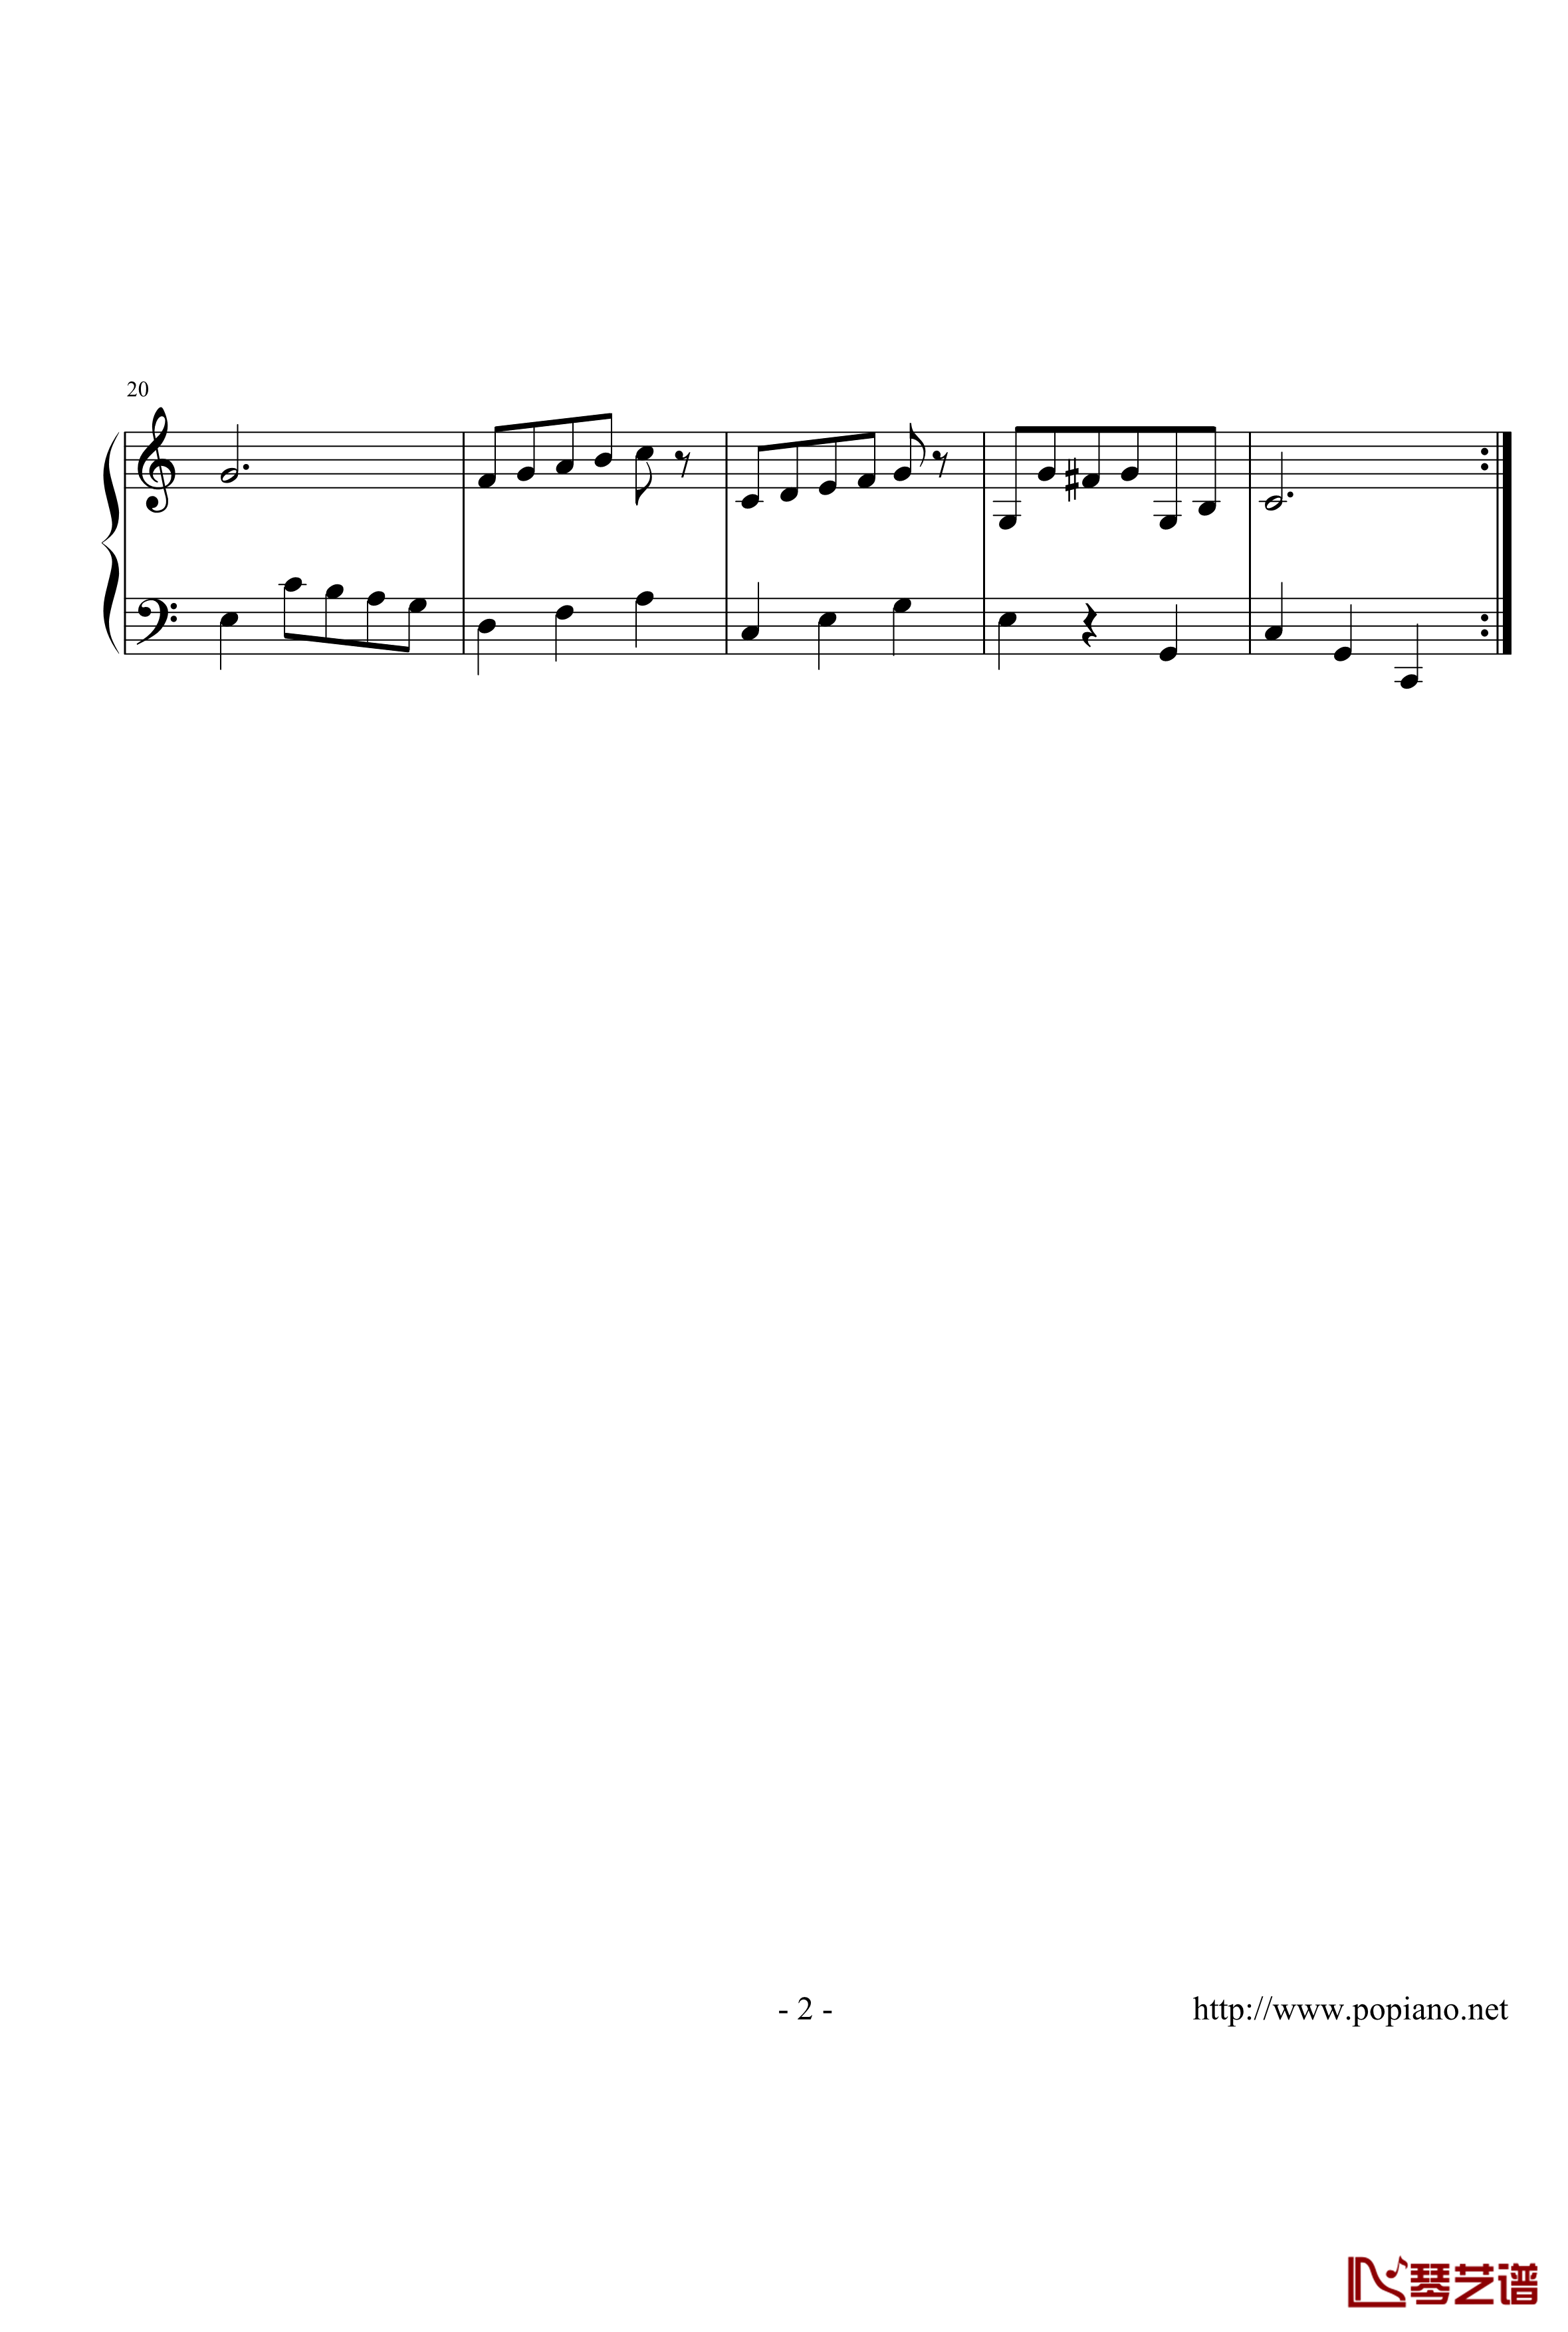 第一小步舞曲钢琴谱-zzmx09162